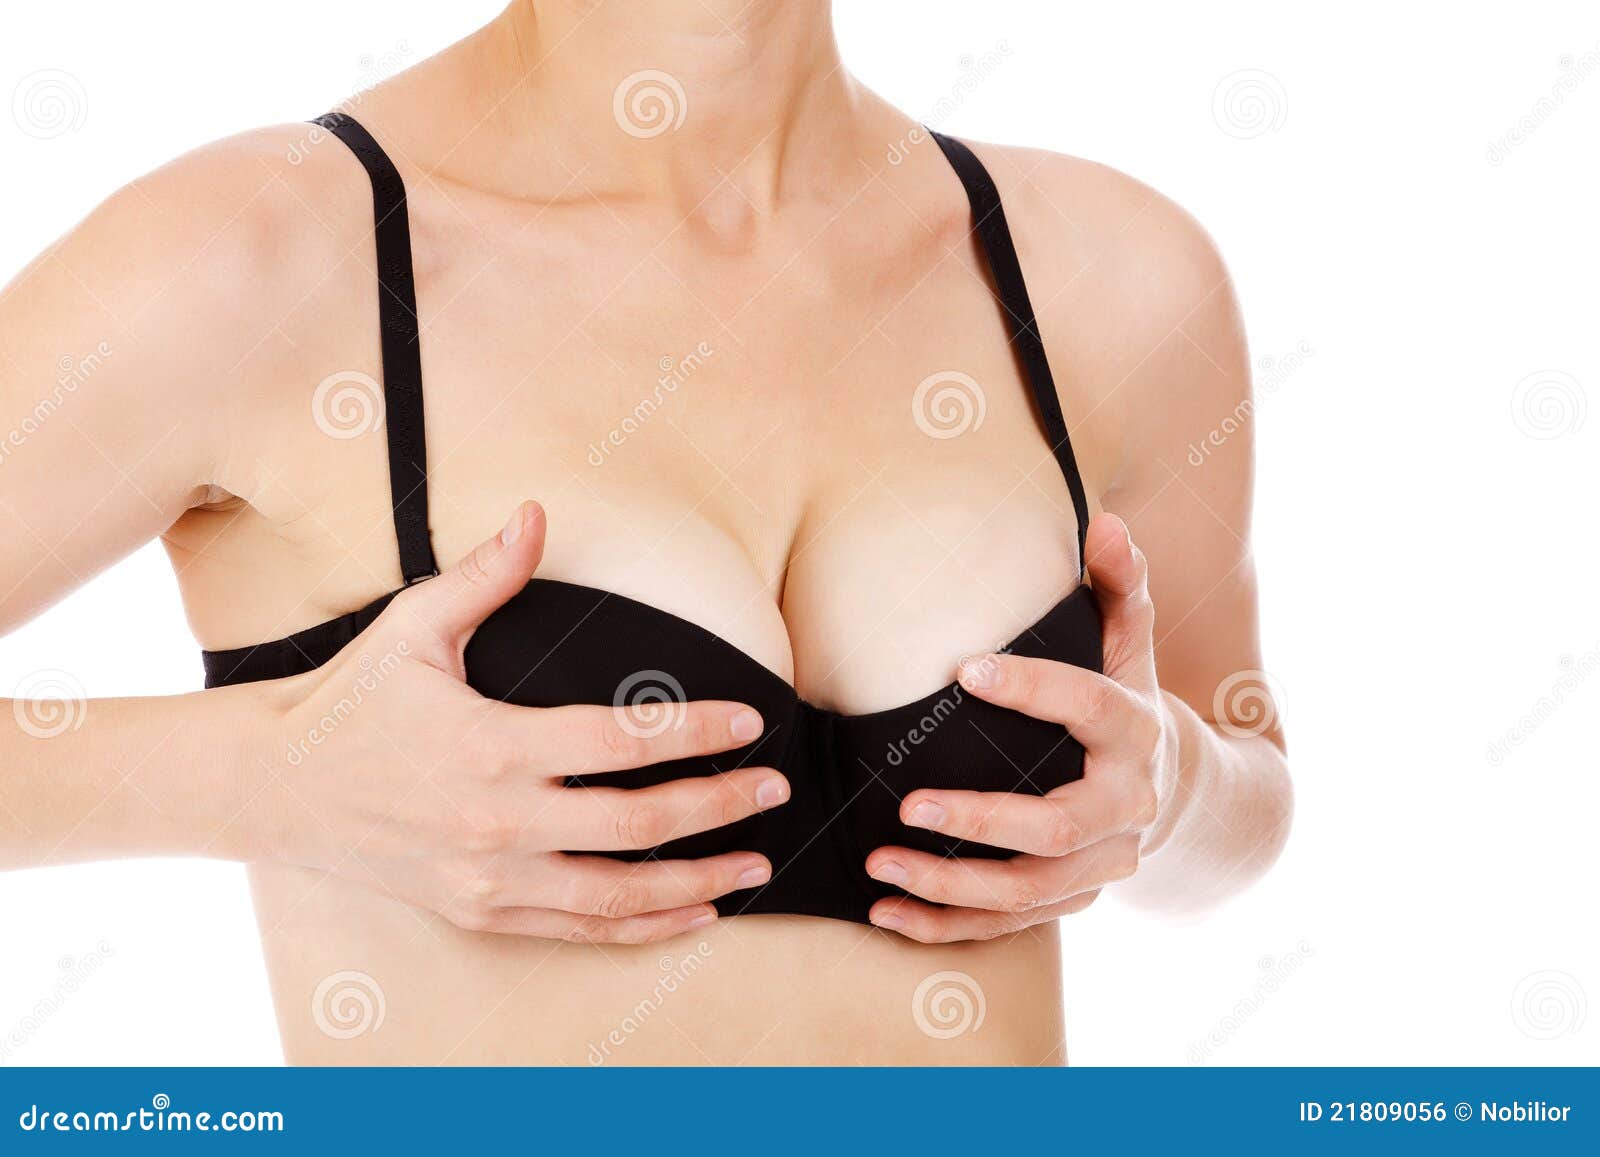 форум жен о груди фото 16